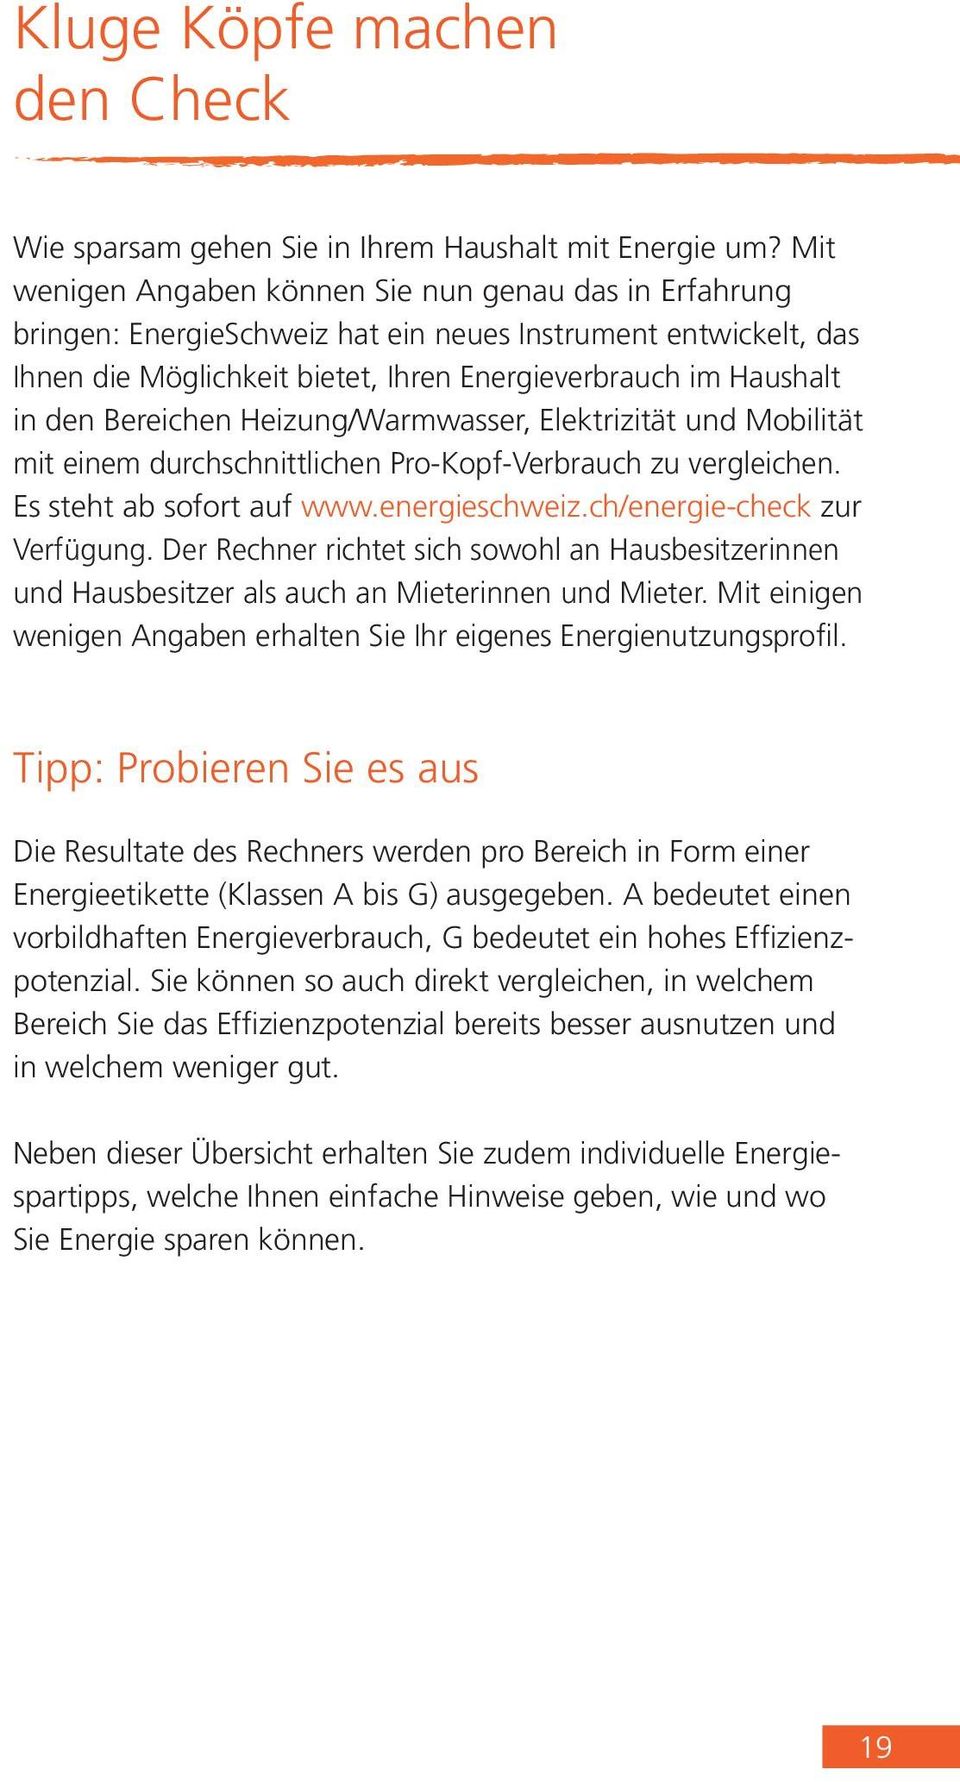 Bereichen Heizung/Warmwasser, Elektrizität und Mobilität mit einem durchschnittlichen Pro-Kopf-Verbrauch zu vergleichen. Es steht ab sofort auf www.energieschweiz.ch/energie-check zur Verfügung.